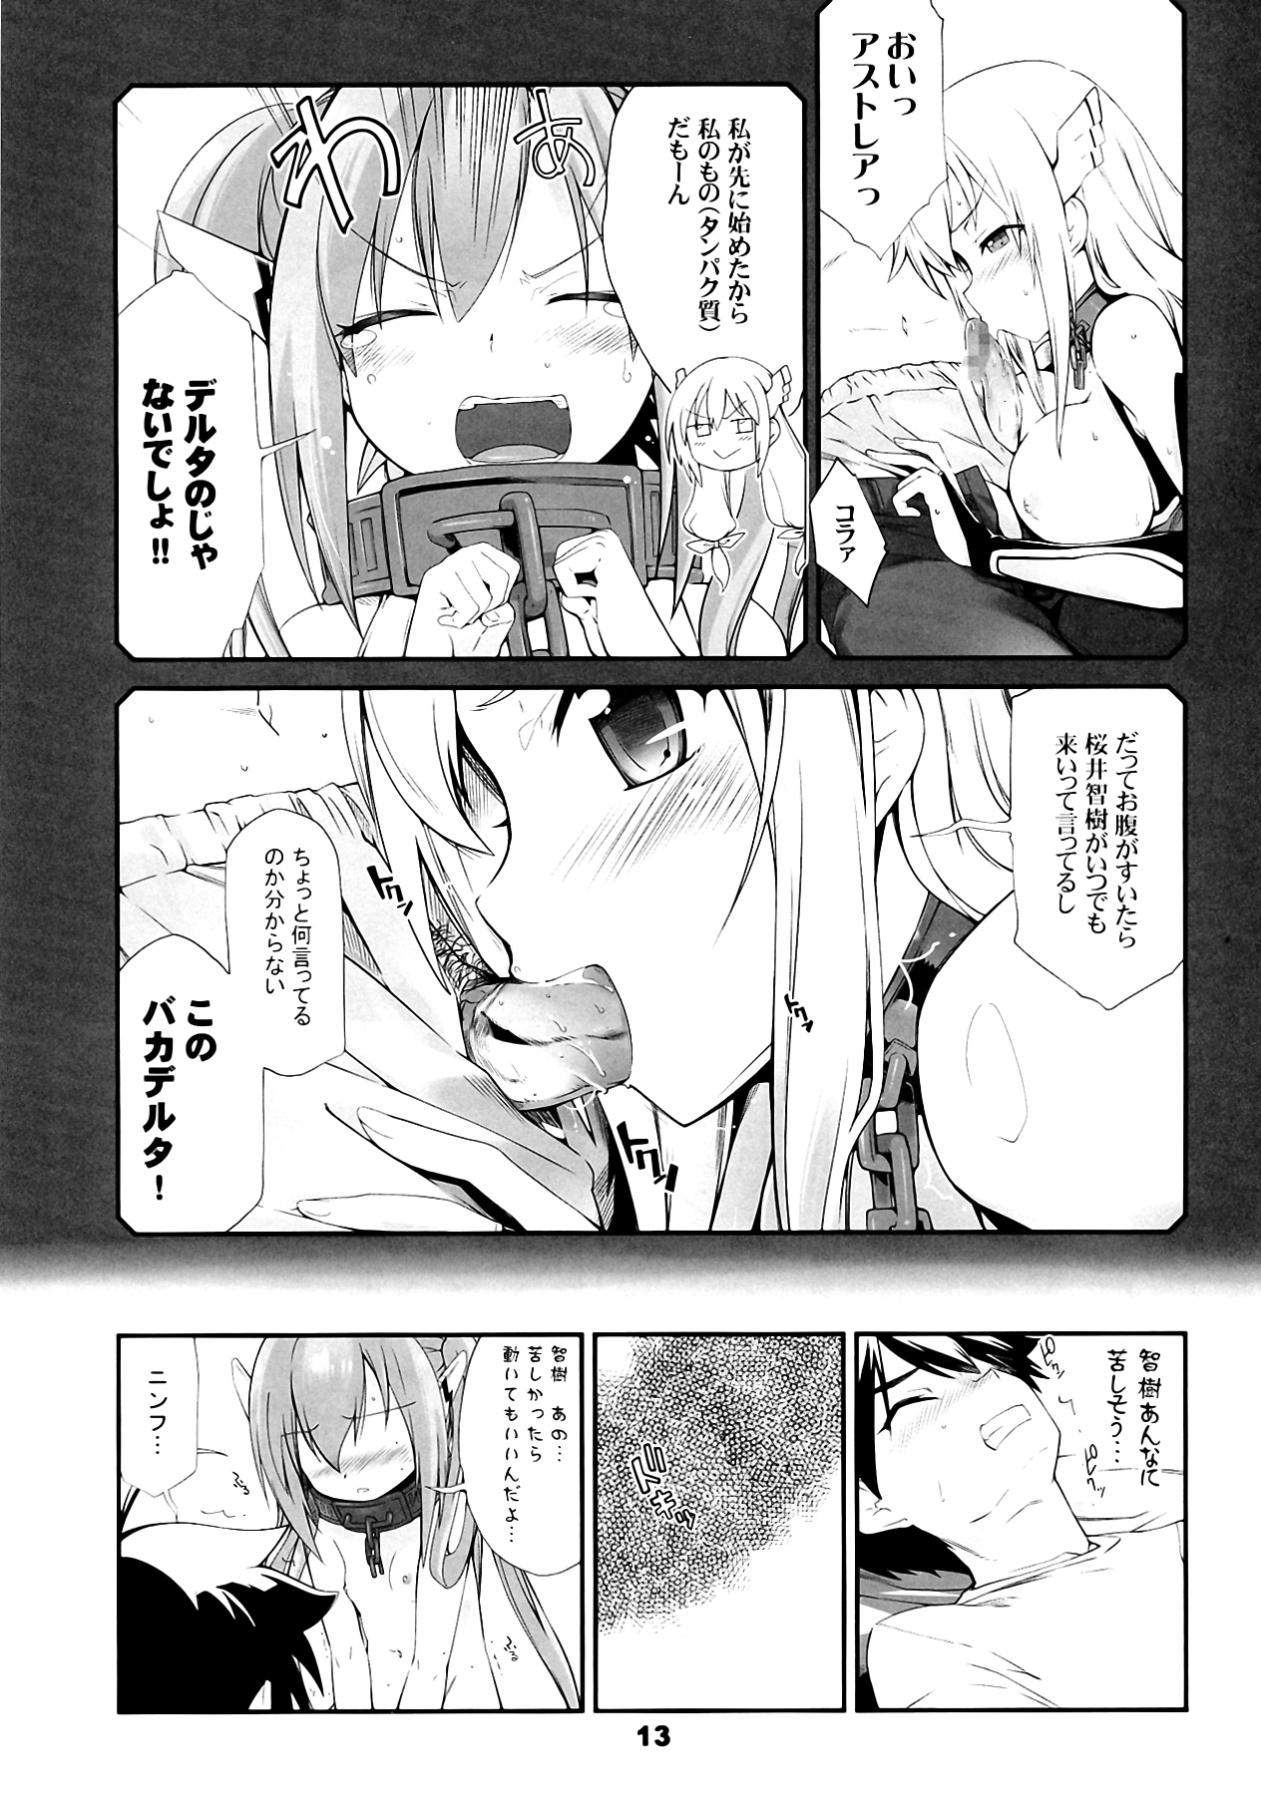 Lingerie Angeloid Maji Tenshi - Sora no otoshimono Tetona - Page 13